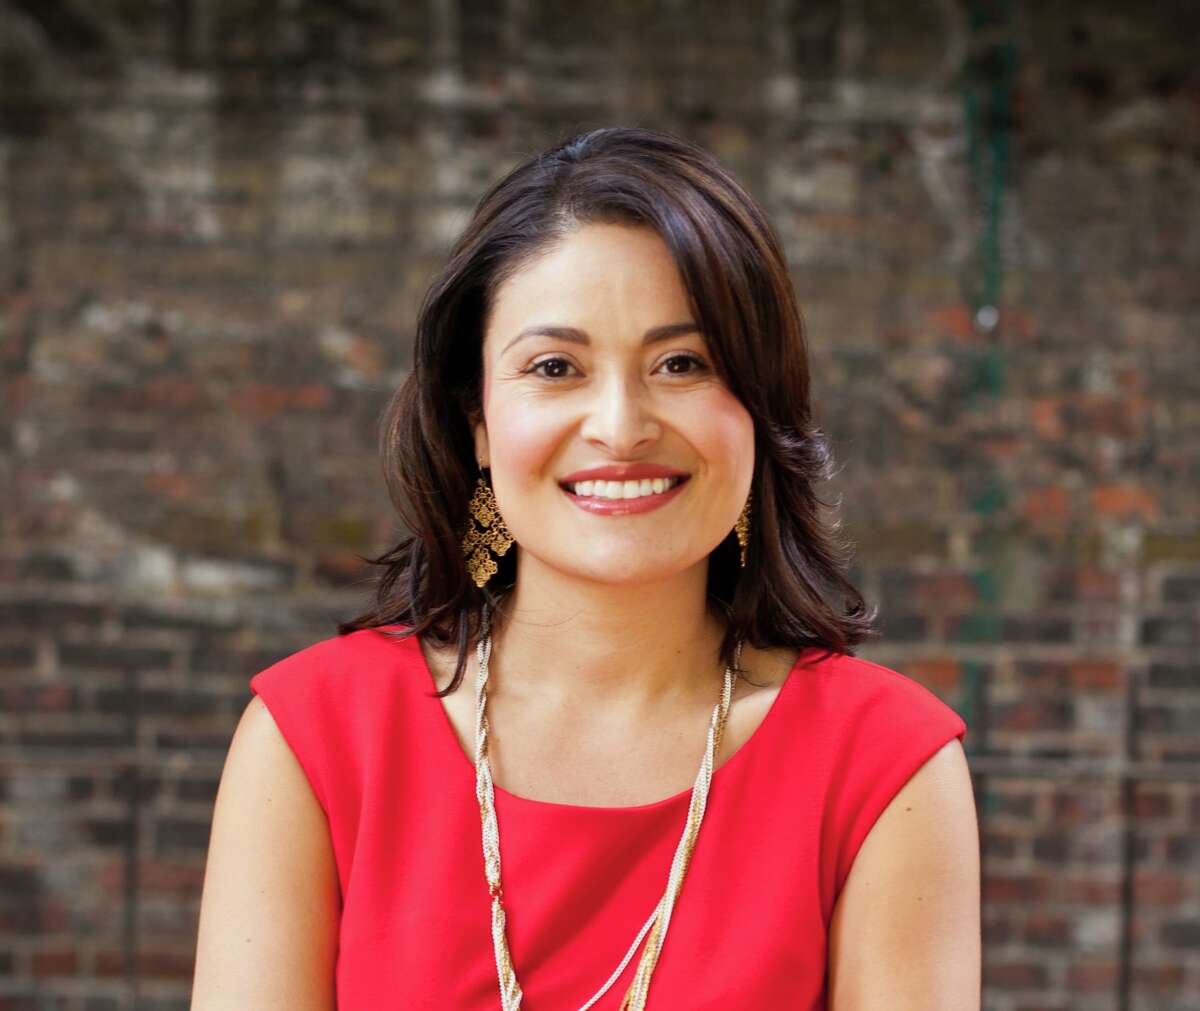 Seattle City Councilmember Lorena González enters 2021 mayoral race